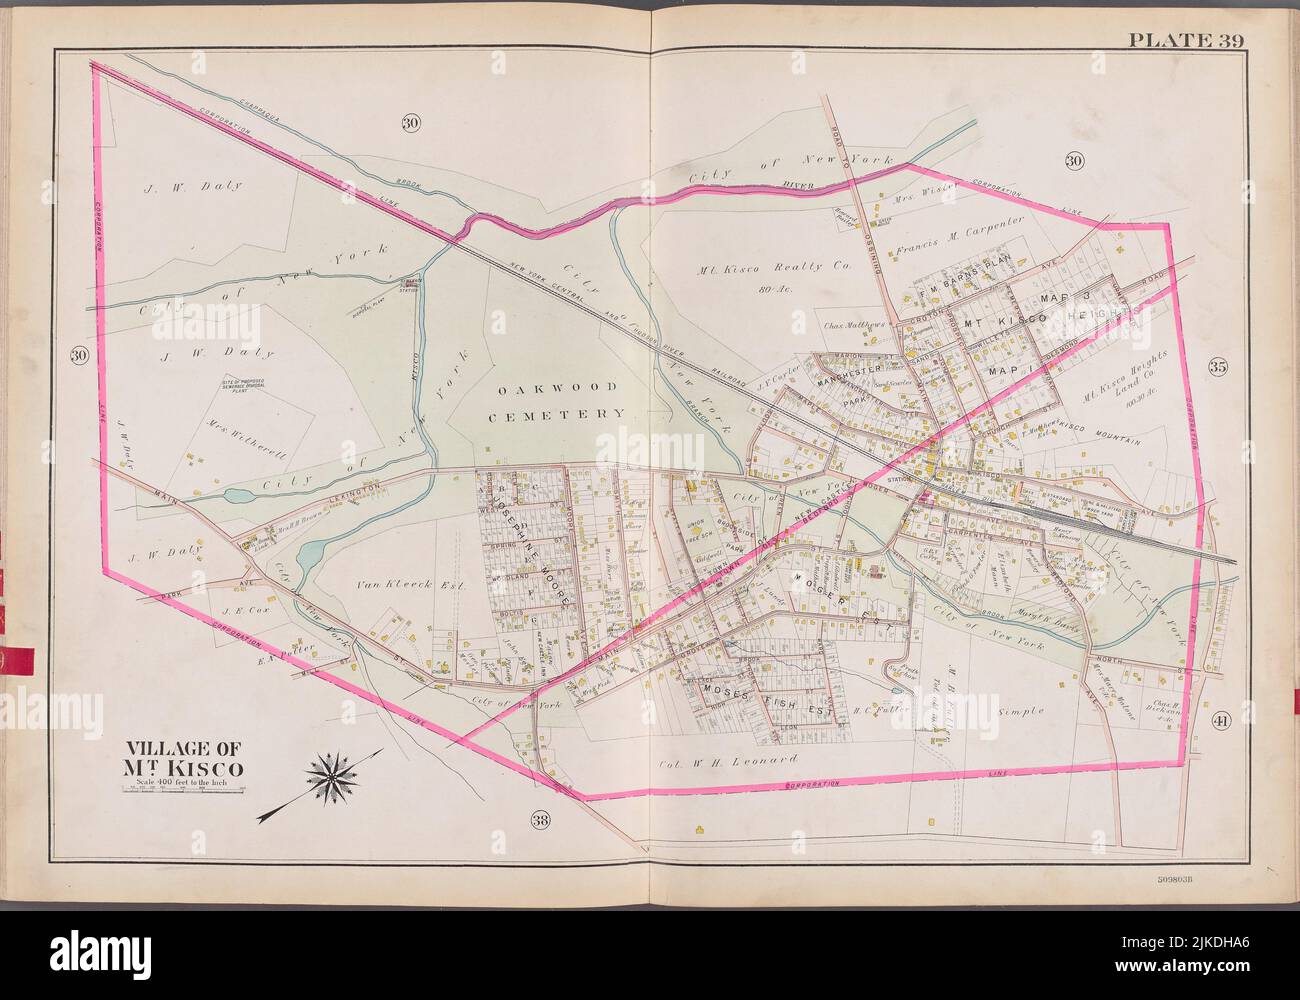 Westchester, V. 2, Doble Página Placa No. 39 [Mapa limitado por el Pueblo de Mt. Kisco]. G.W. Bromley & Co. (Editorial). Atlas de los Estados Unidos Nuevo Foto de stock